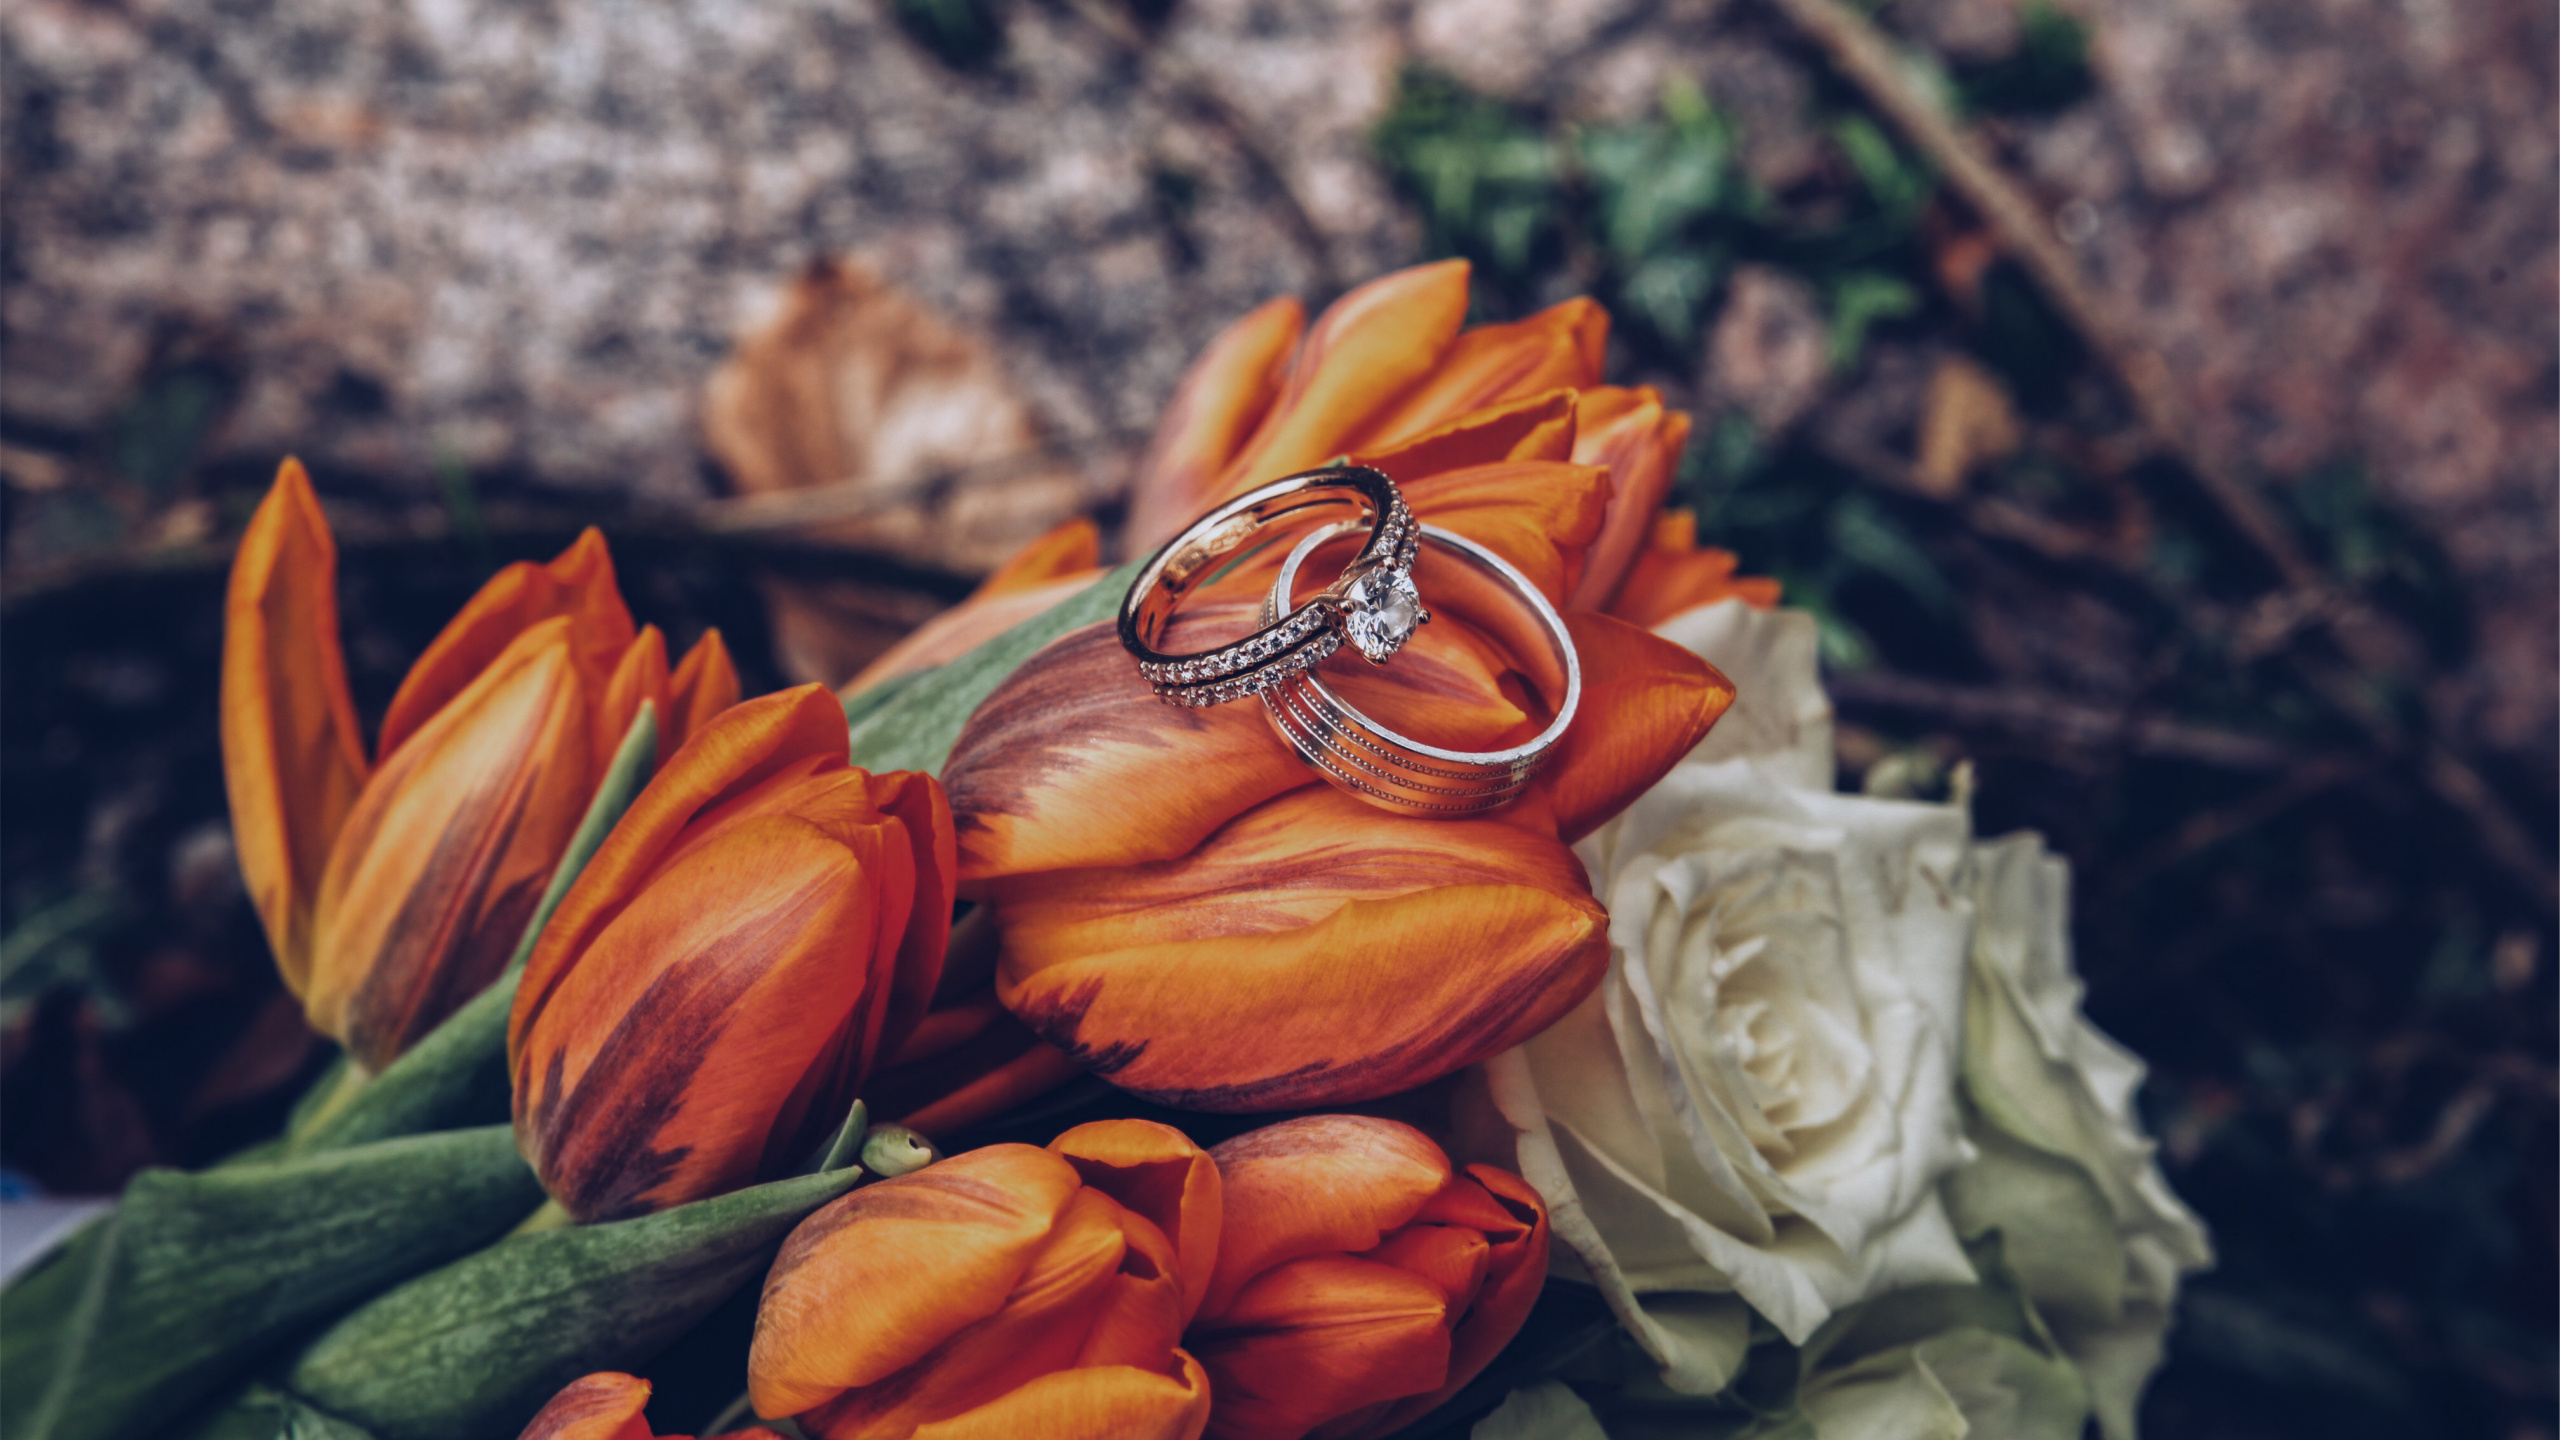 订婚戒指, 结婚戒指, 橙色, 黄色的, 的婚礼仪式供应 壁纸 2560x1440 允许